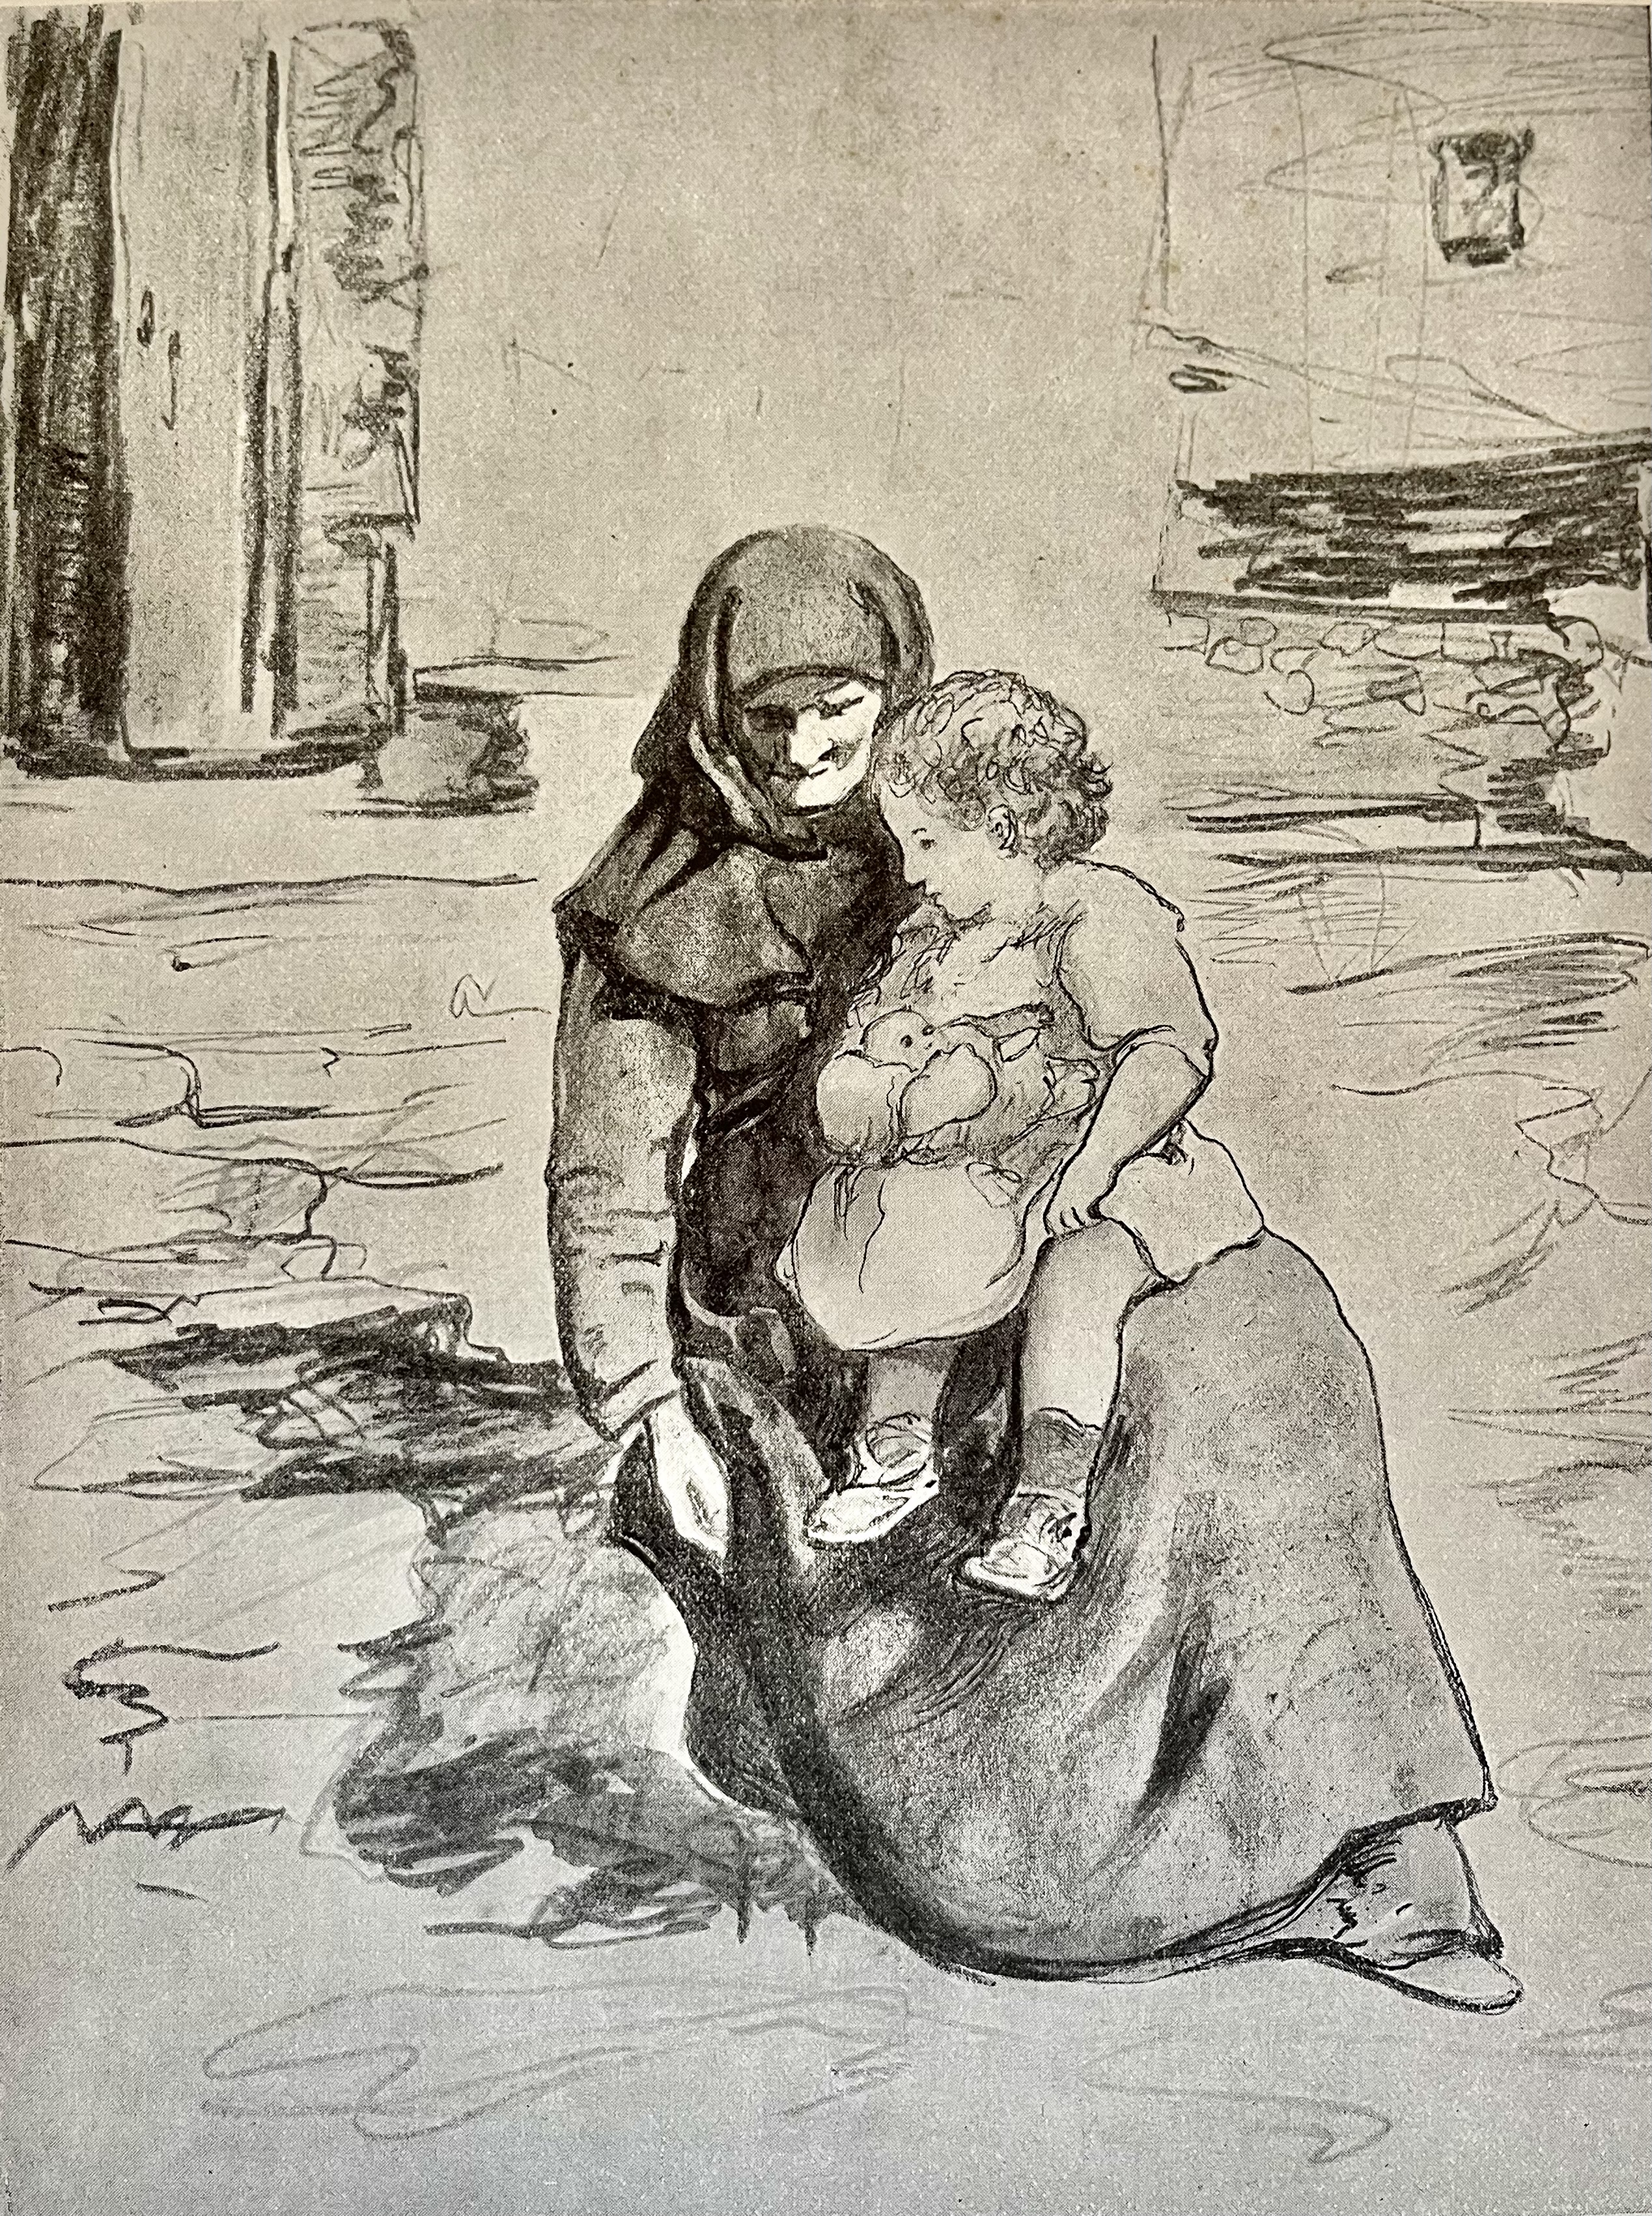 'La Corse dans l'histoire' par A. Albitreccia, éditions Archat, Paris, 1939. Illustration de L. Antoni, 1928.